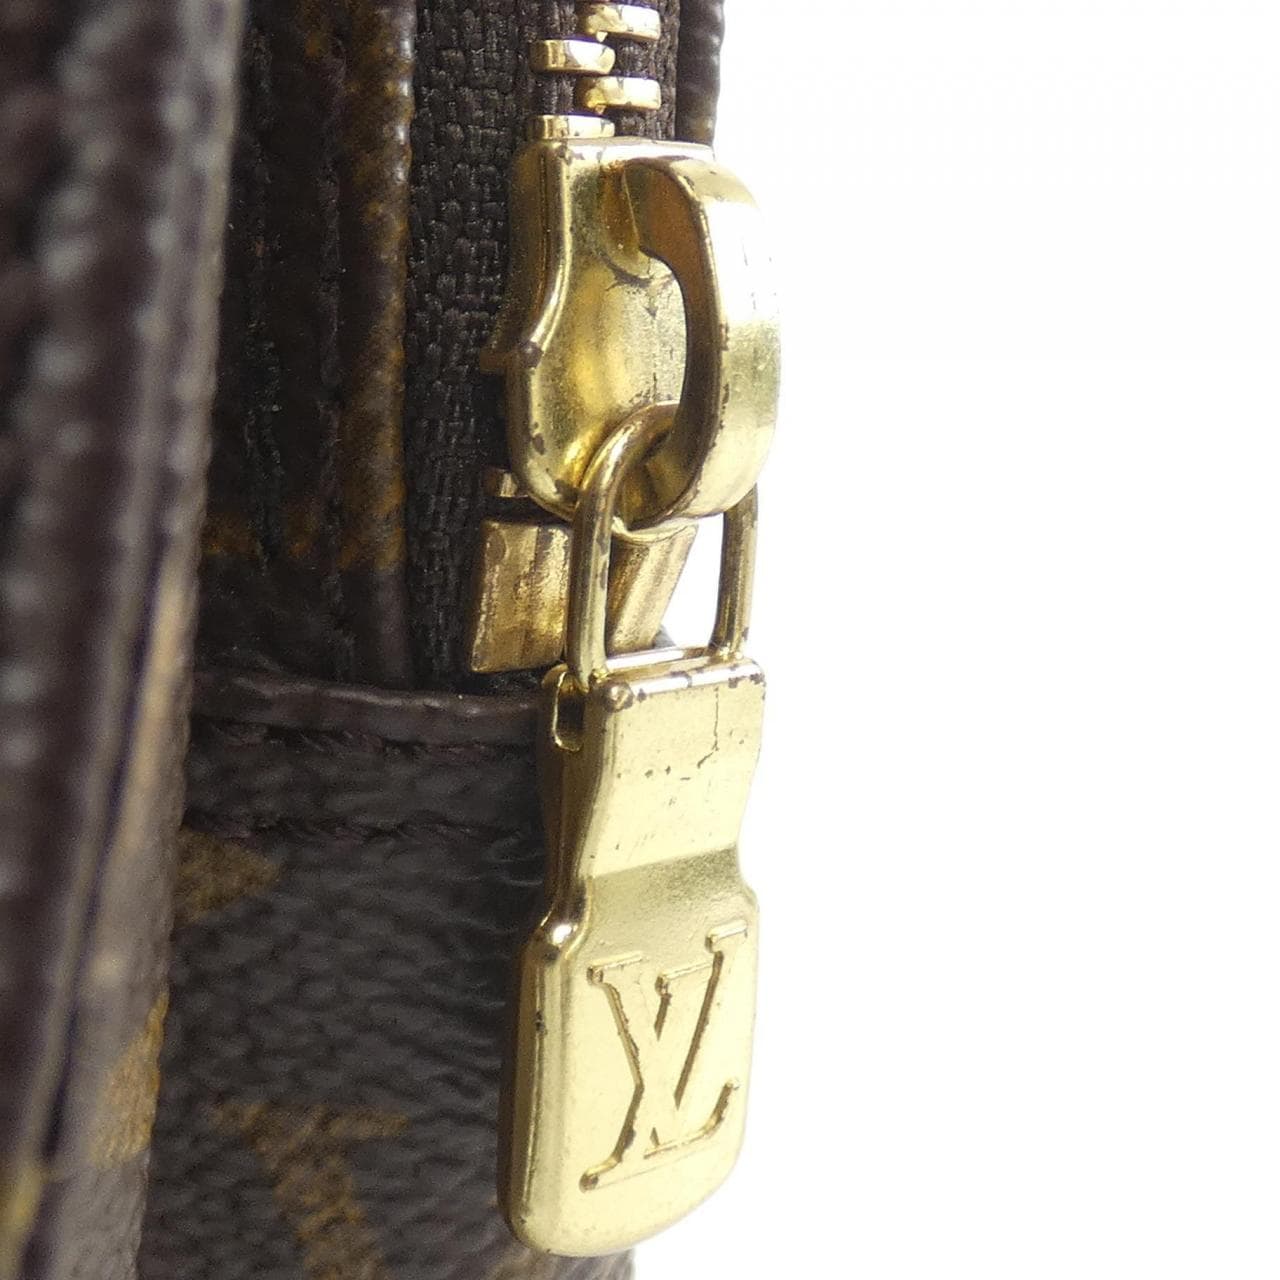 LOUIS VUITTON Monogram Amazon M45236 Shoulder Bag